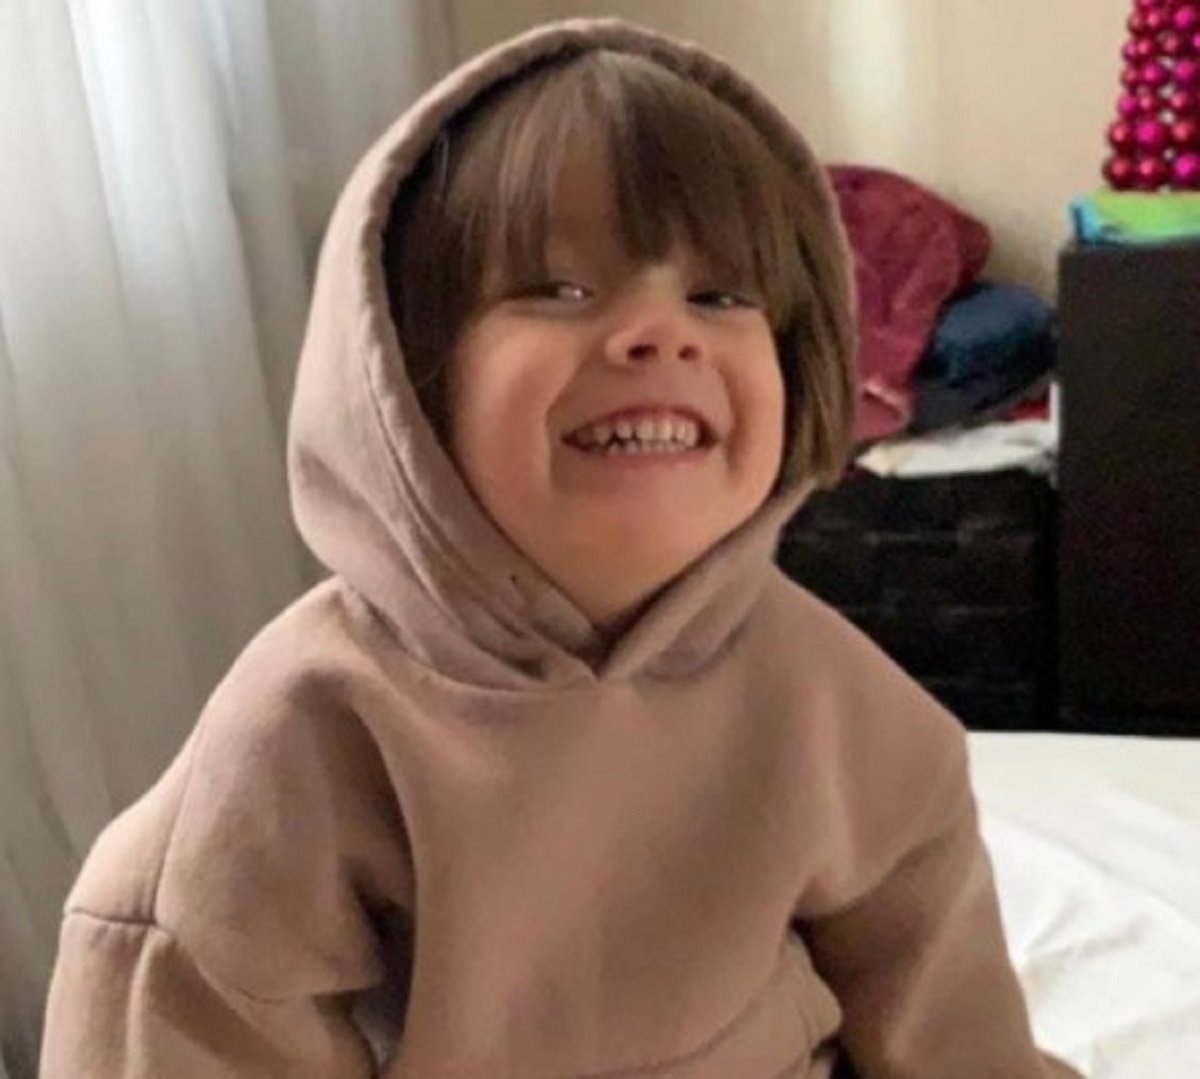 Sasha Yahno morto ritrovamento bambino 4 anni 